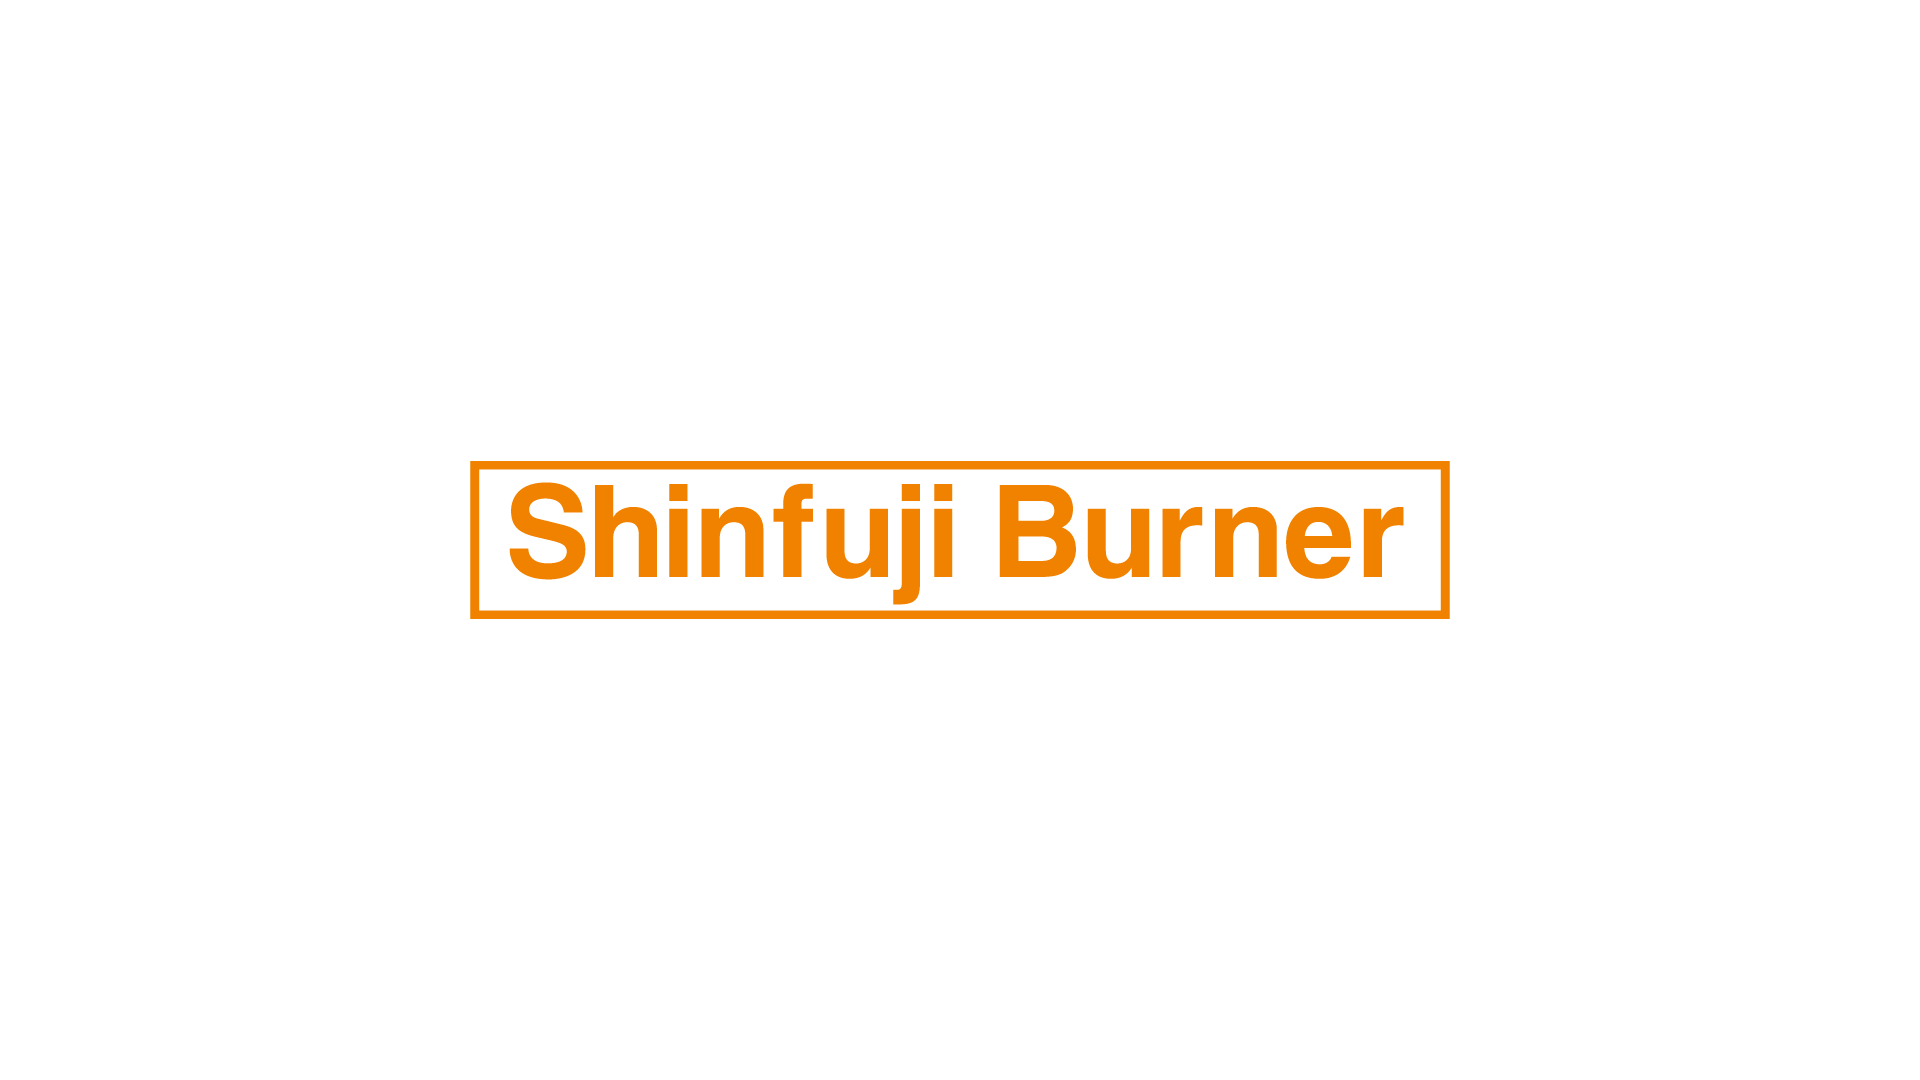 ShinfujiBurner製品、価格改定のお知らせ